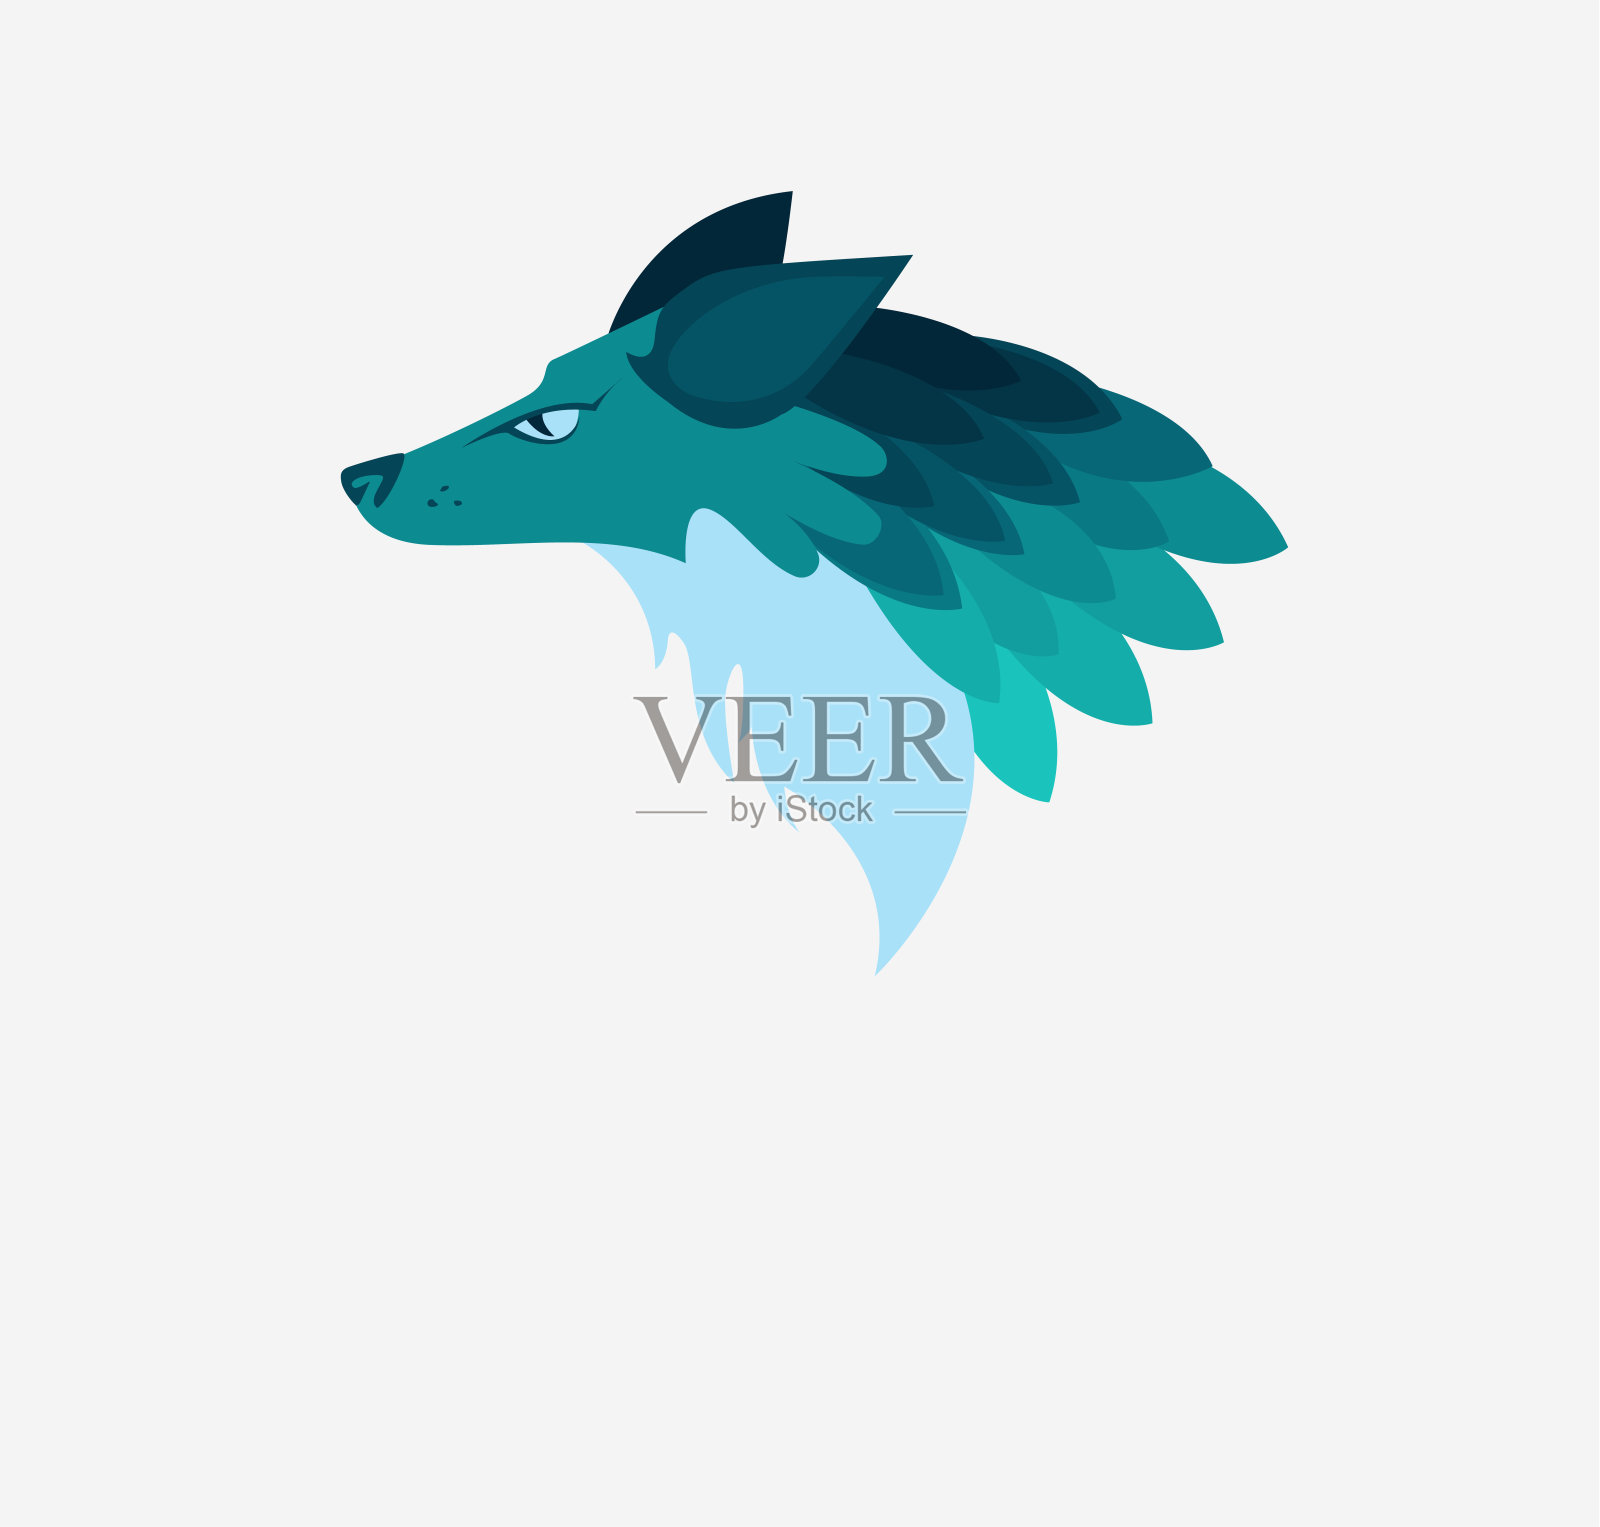 矢量插图:一个幻想的头像狼的动物在蓝色和绿松石颜色。插画图片素材